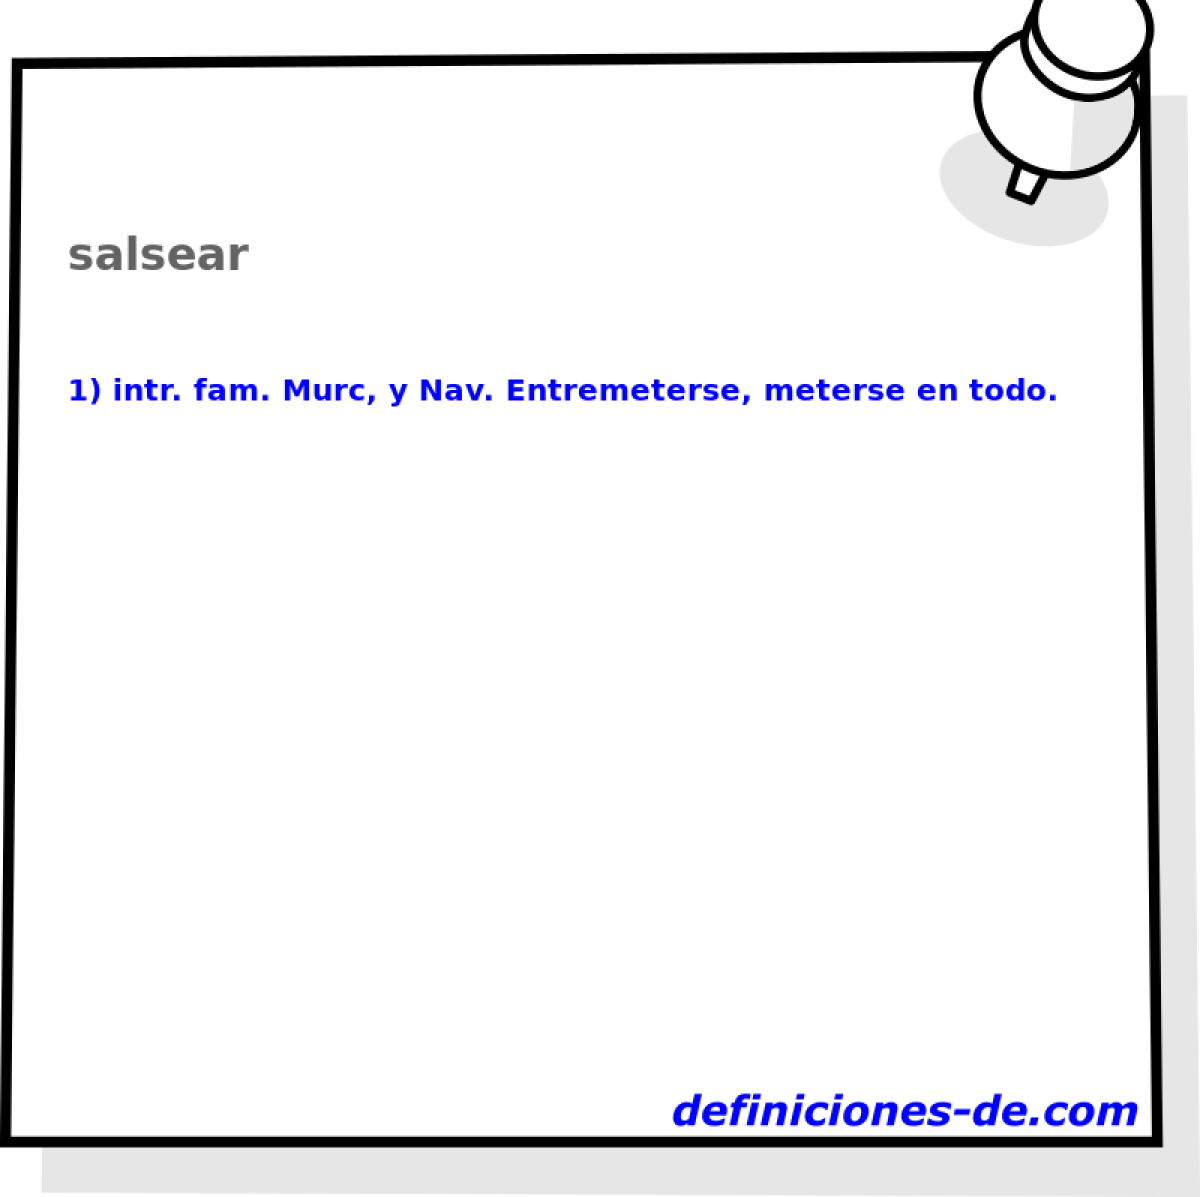 salsear 